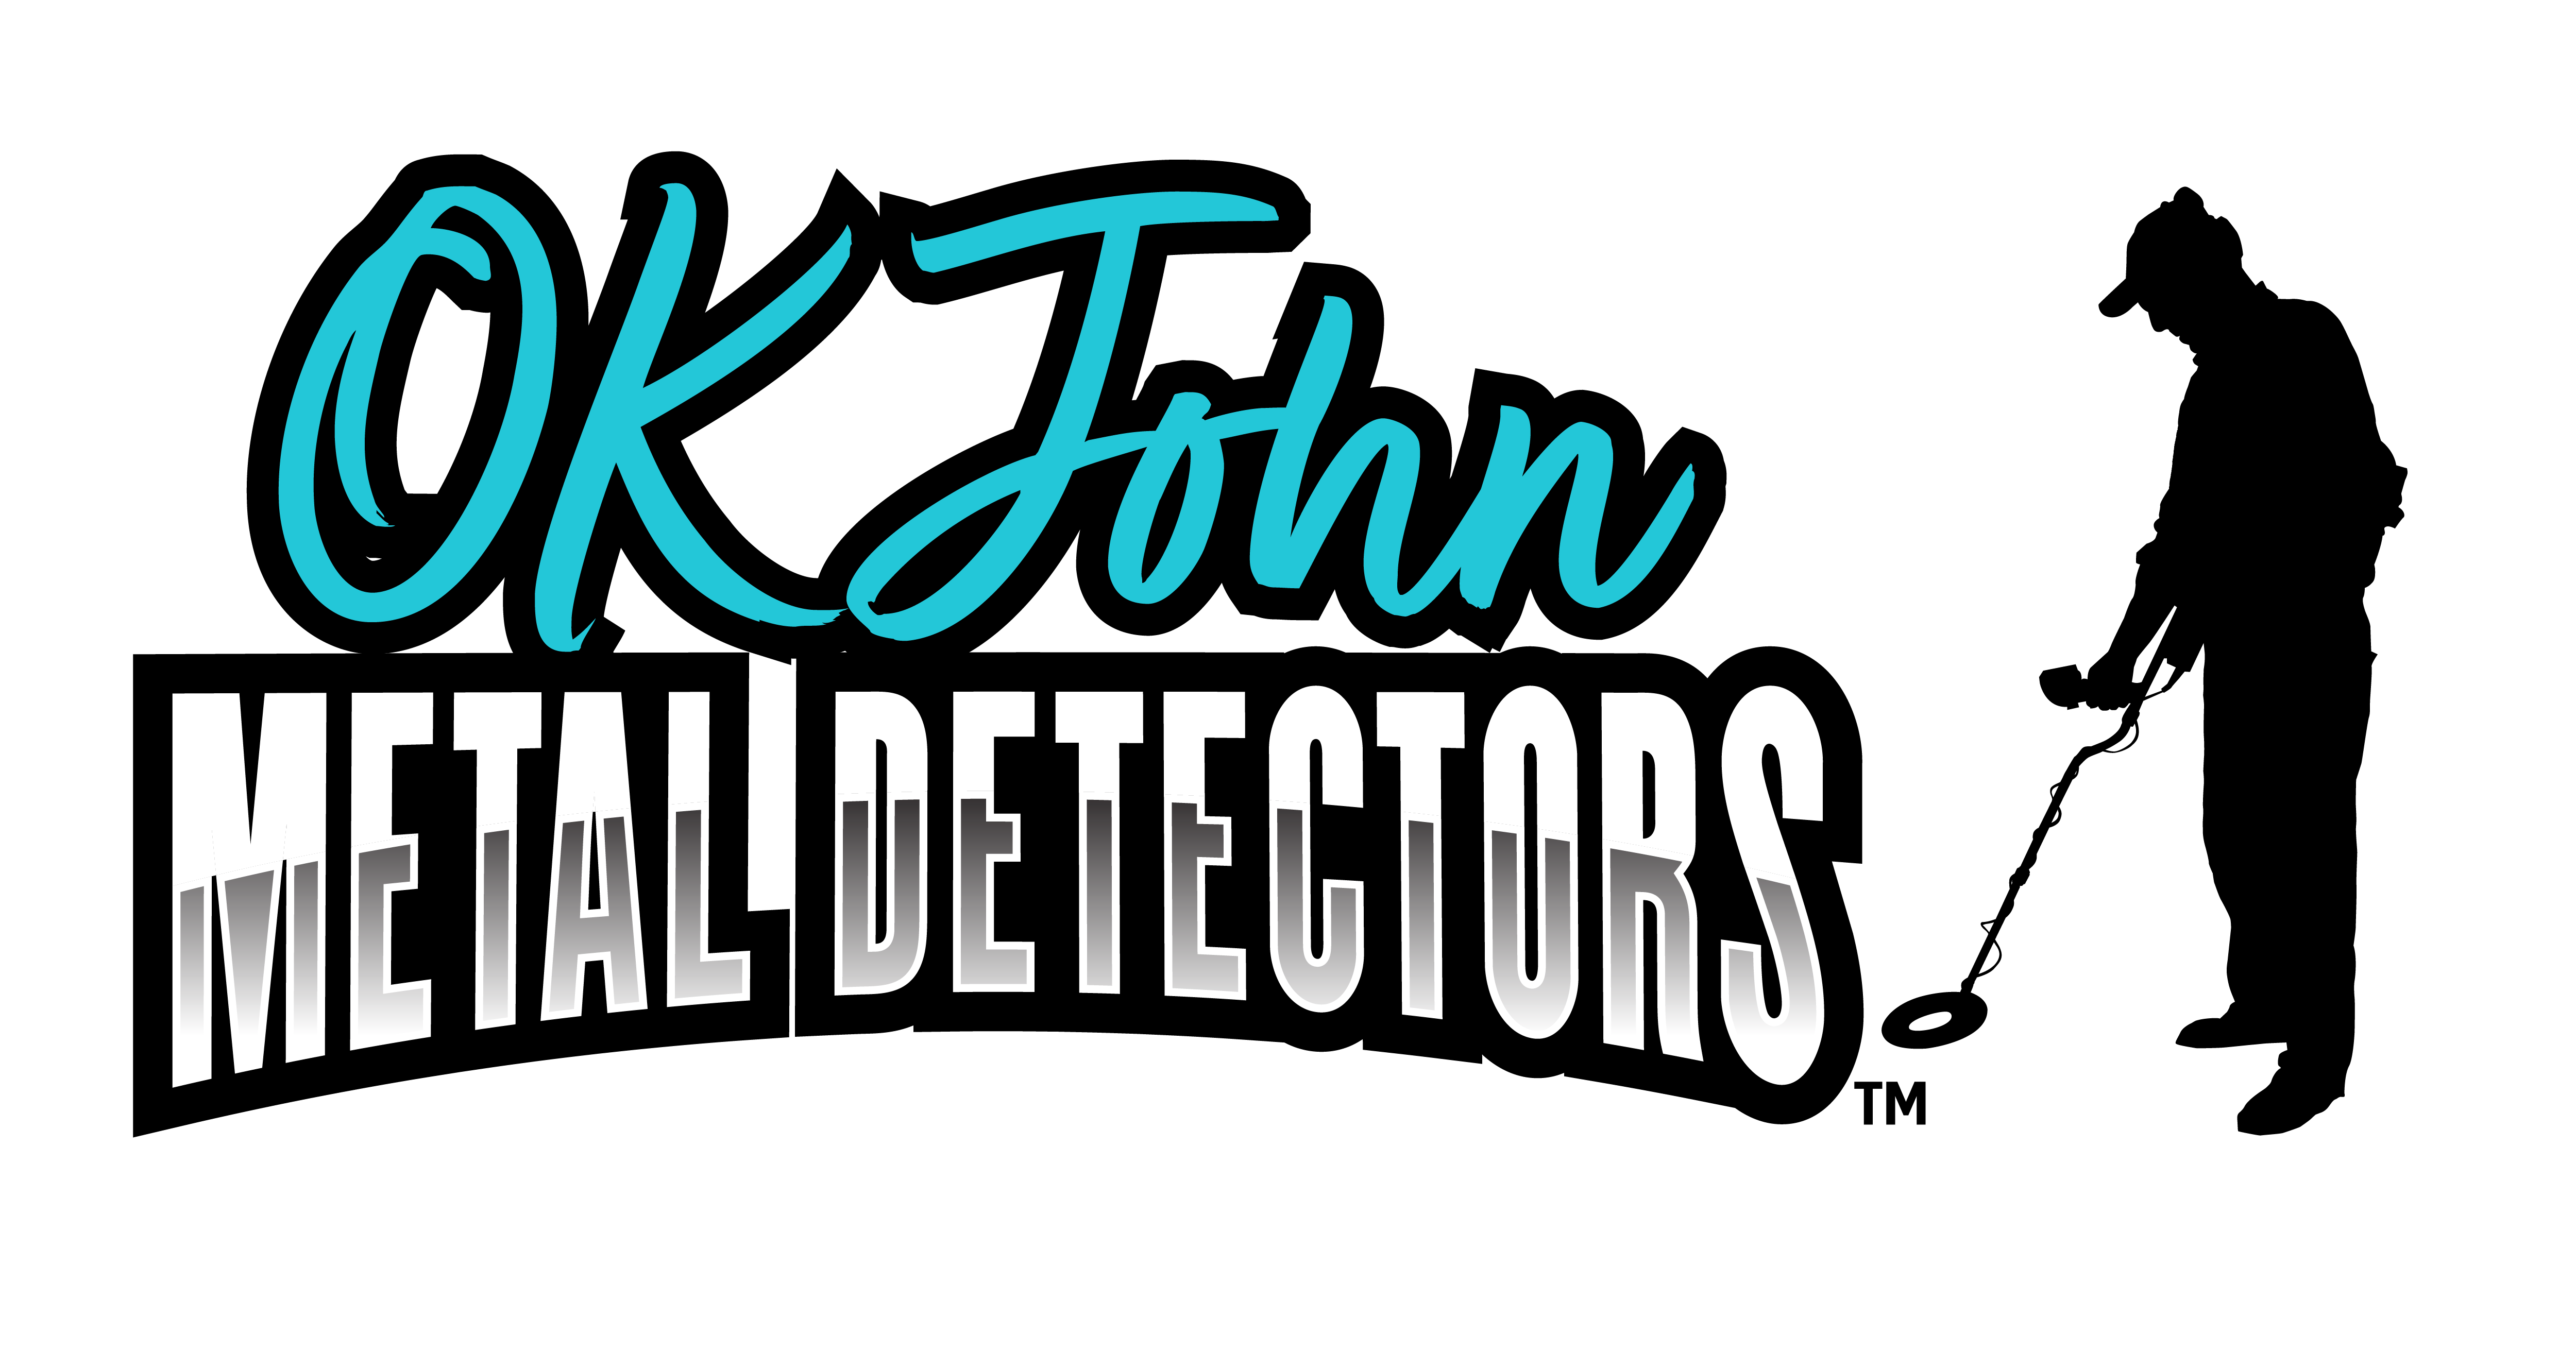 Ok John Metal Detectors